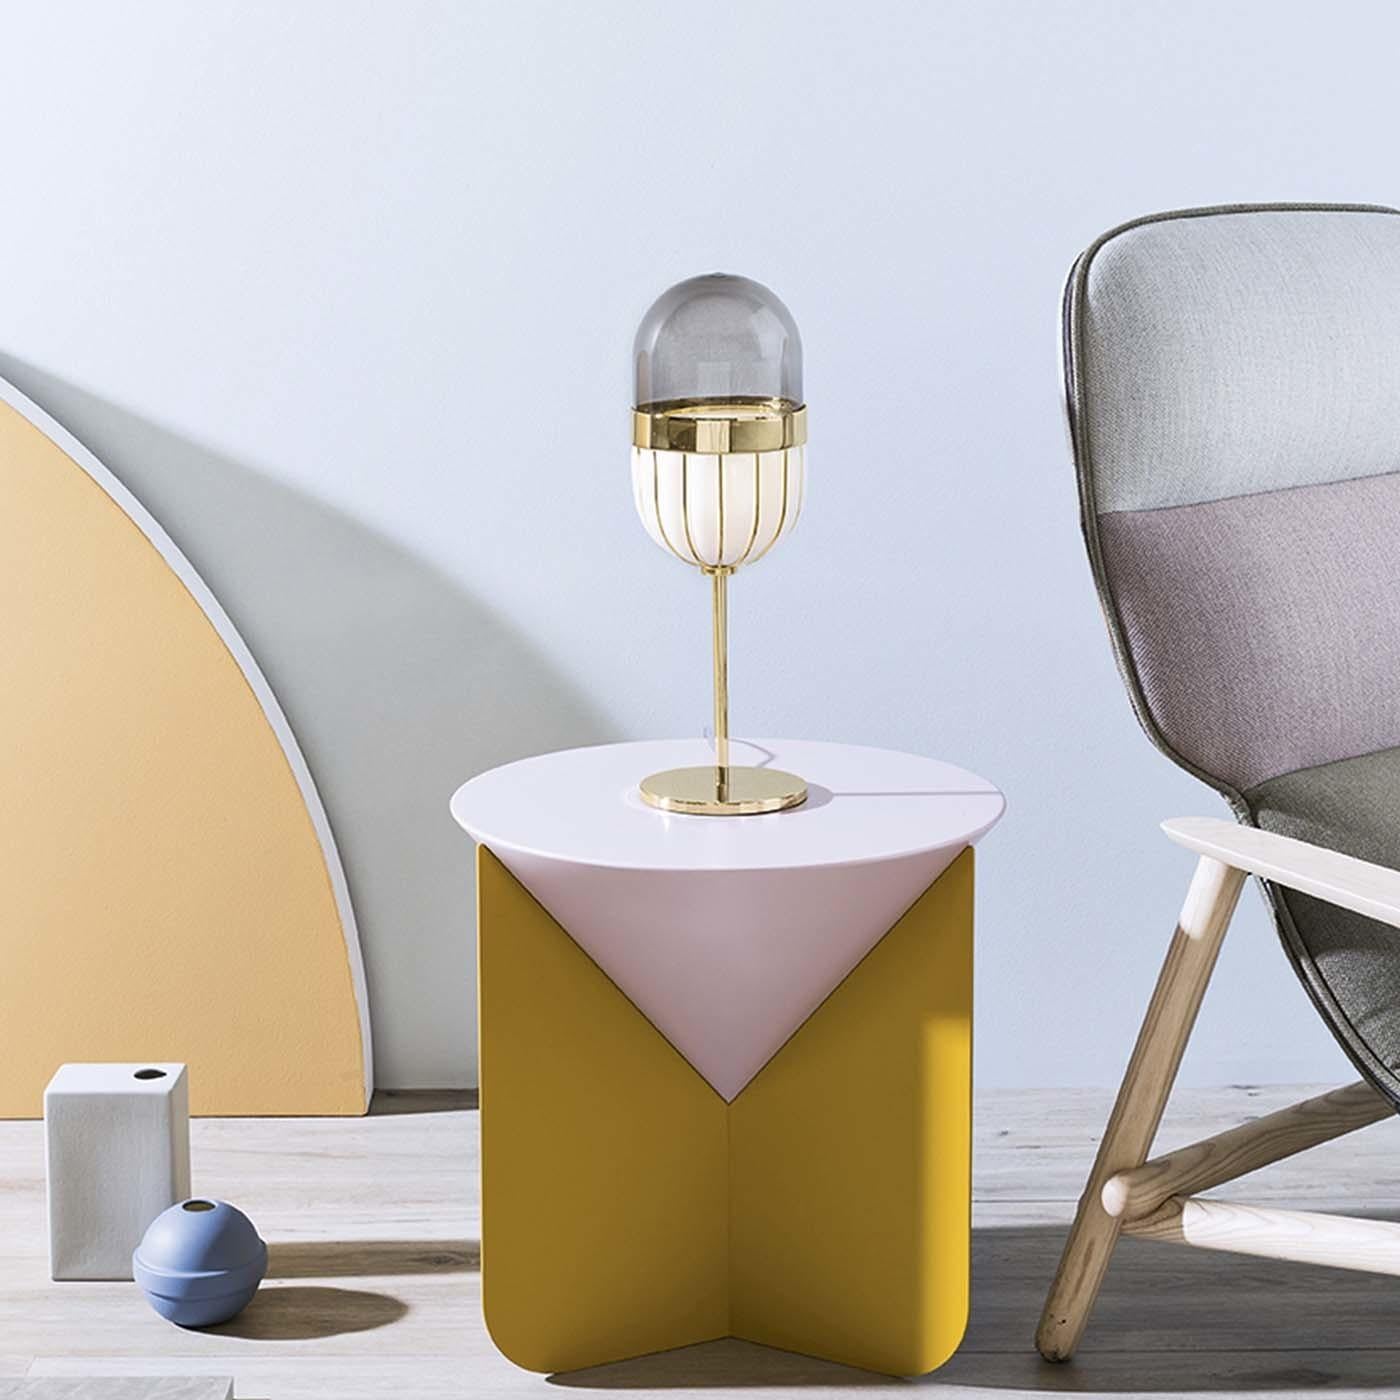 Faisant partie de la collection Pill conçue par Matteo Zorzenoni, cette lampe de table élégante et moderne sera un ajout sophistiqué à un bureau ou une console et peut être associée au lampadaire et au plafonnier de la même série pour un effet